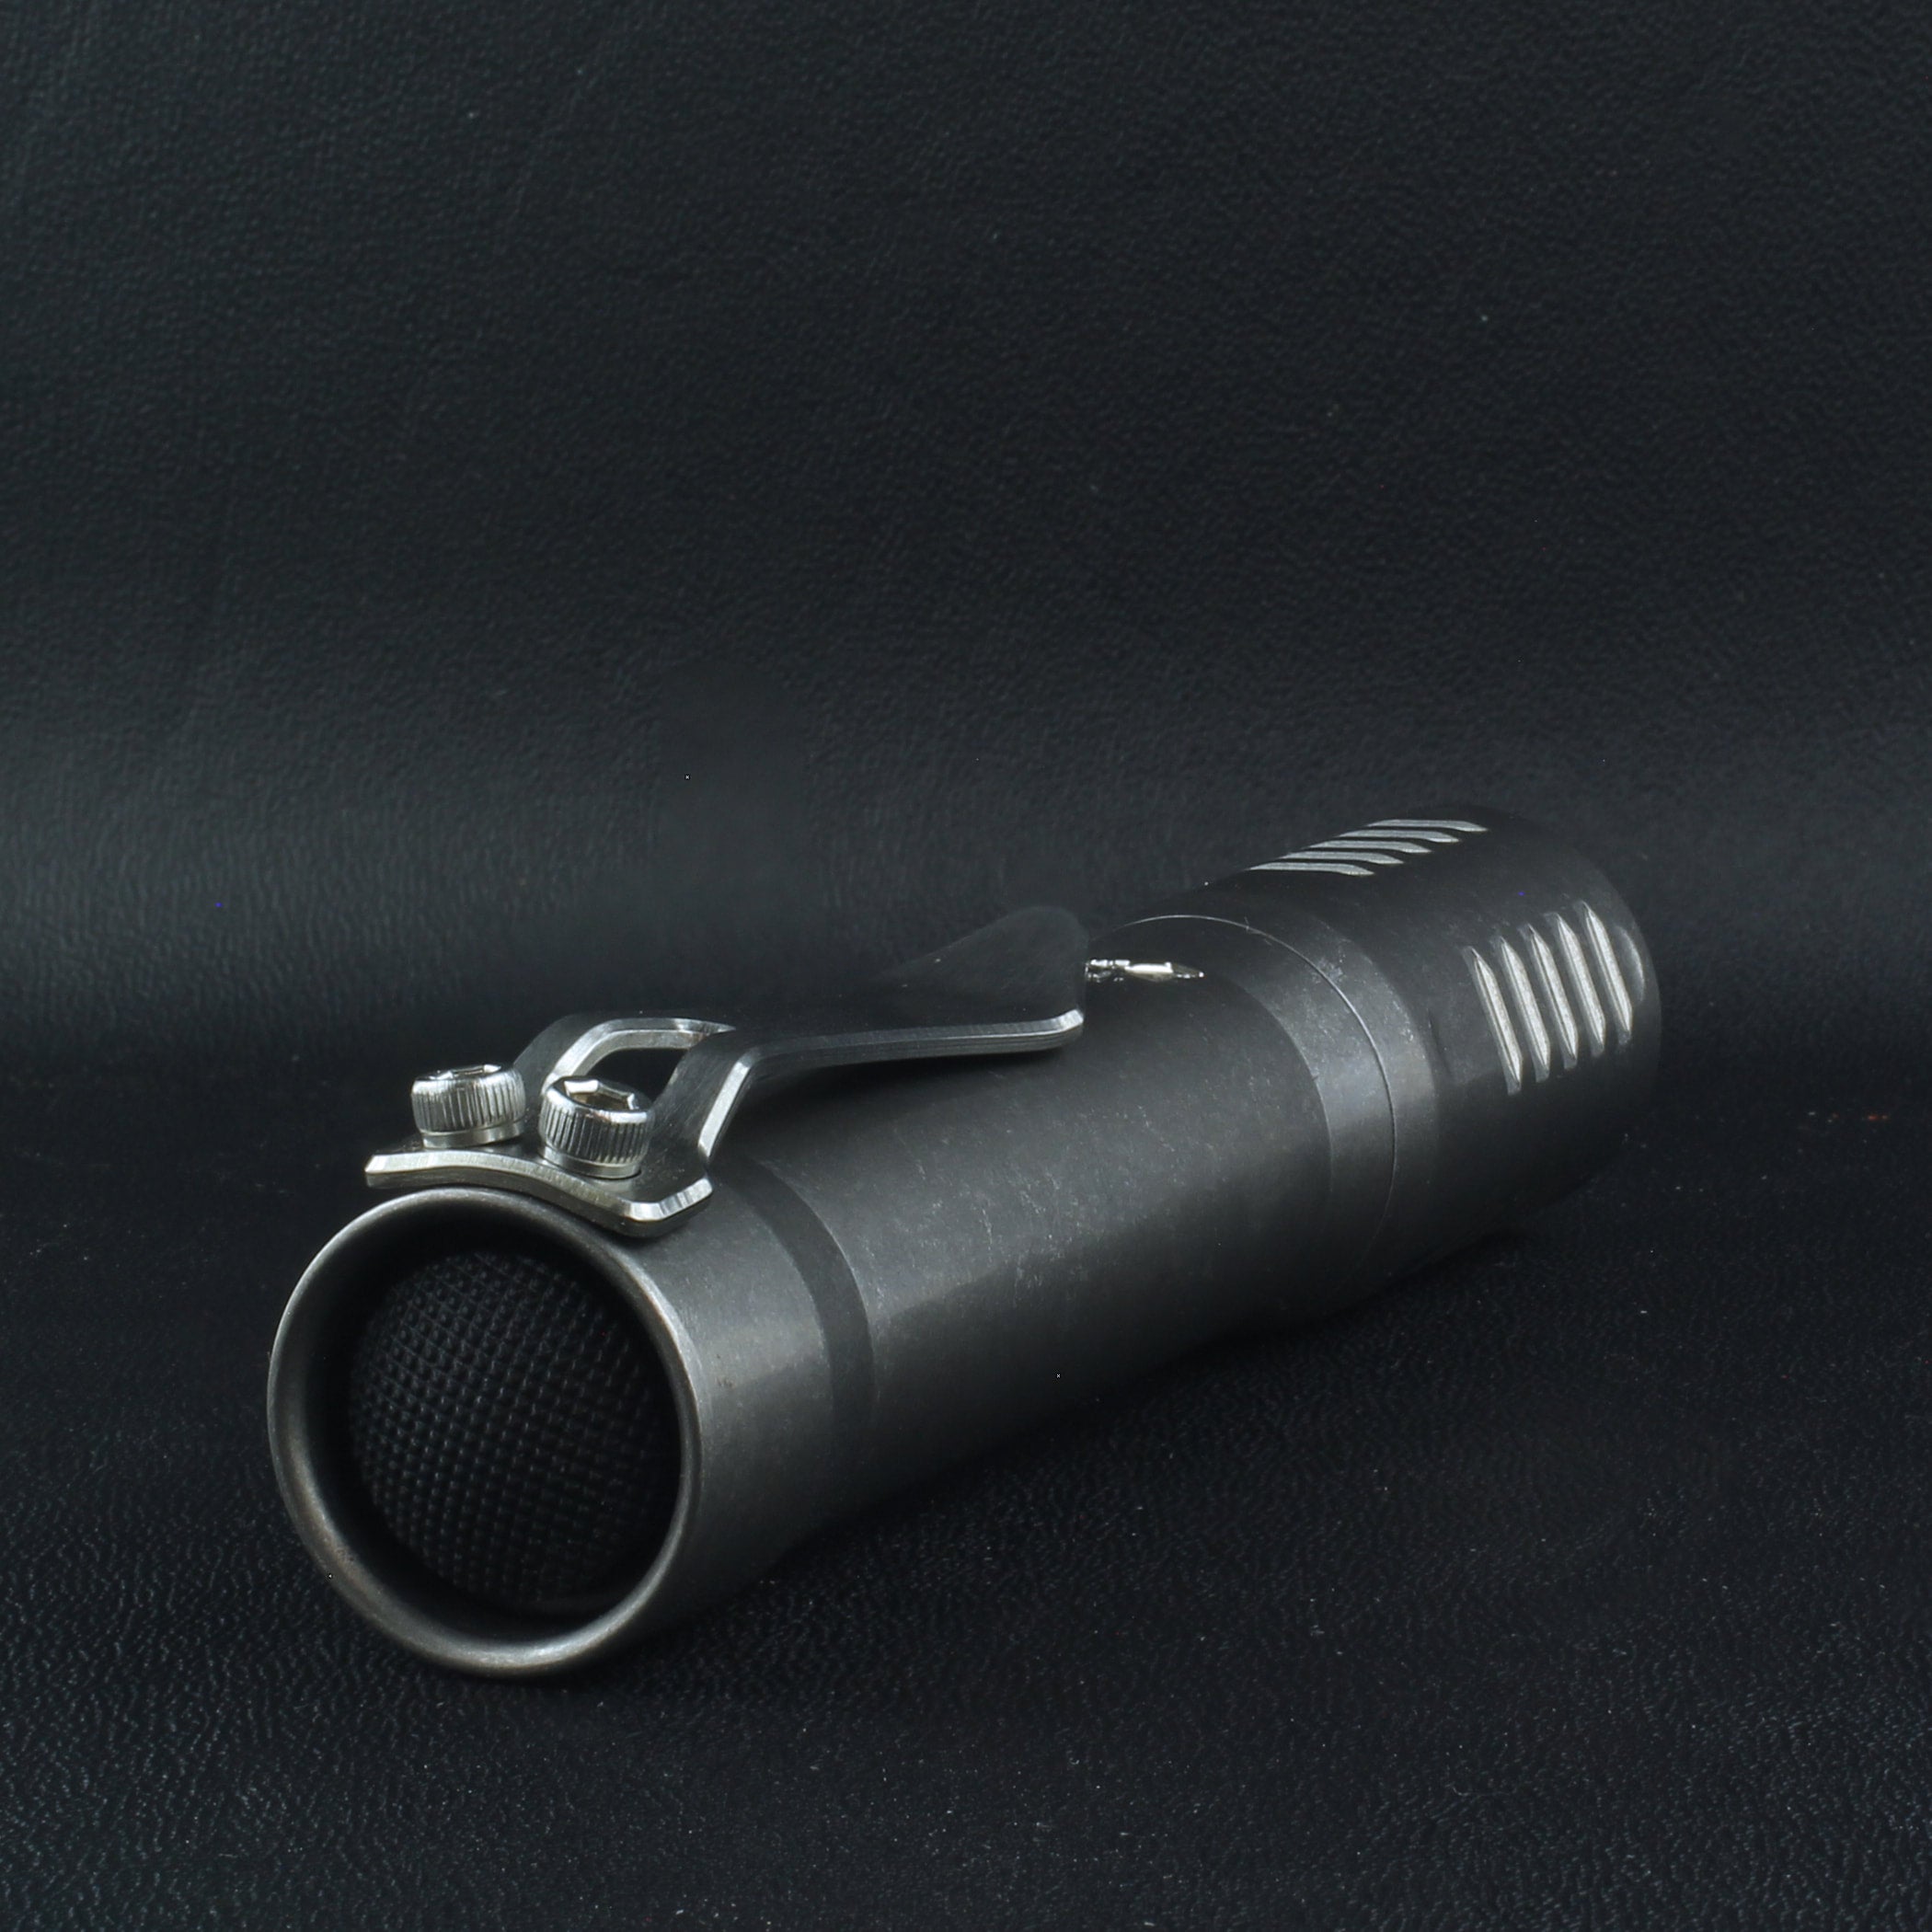 The F2 Flashlight in Titanium